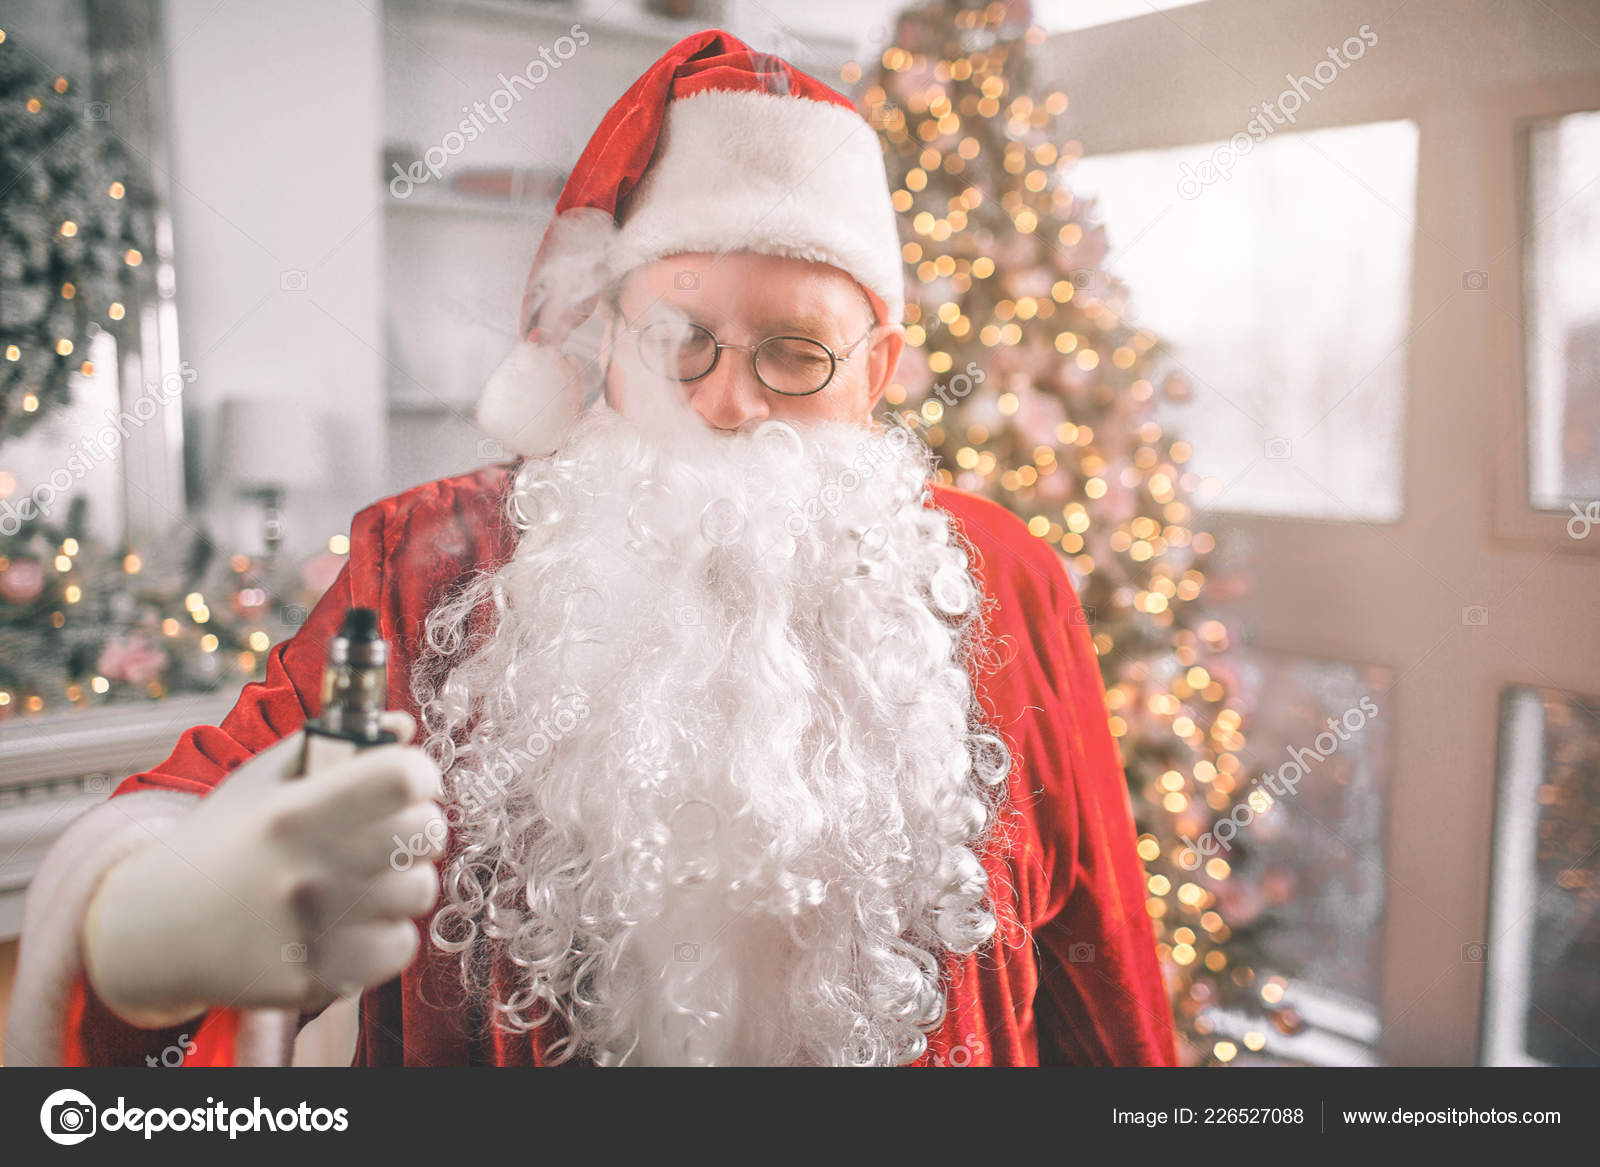 Entspannter Mann im Weihnachtsmann-Kostüm steht und hält Vapiano in der  Hand. Rauch dringt aus seinem Mund. Er ist entspannt. - Stockfotografie:  lizenzfreie Fotos © Estradaanton 226527088